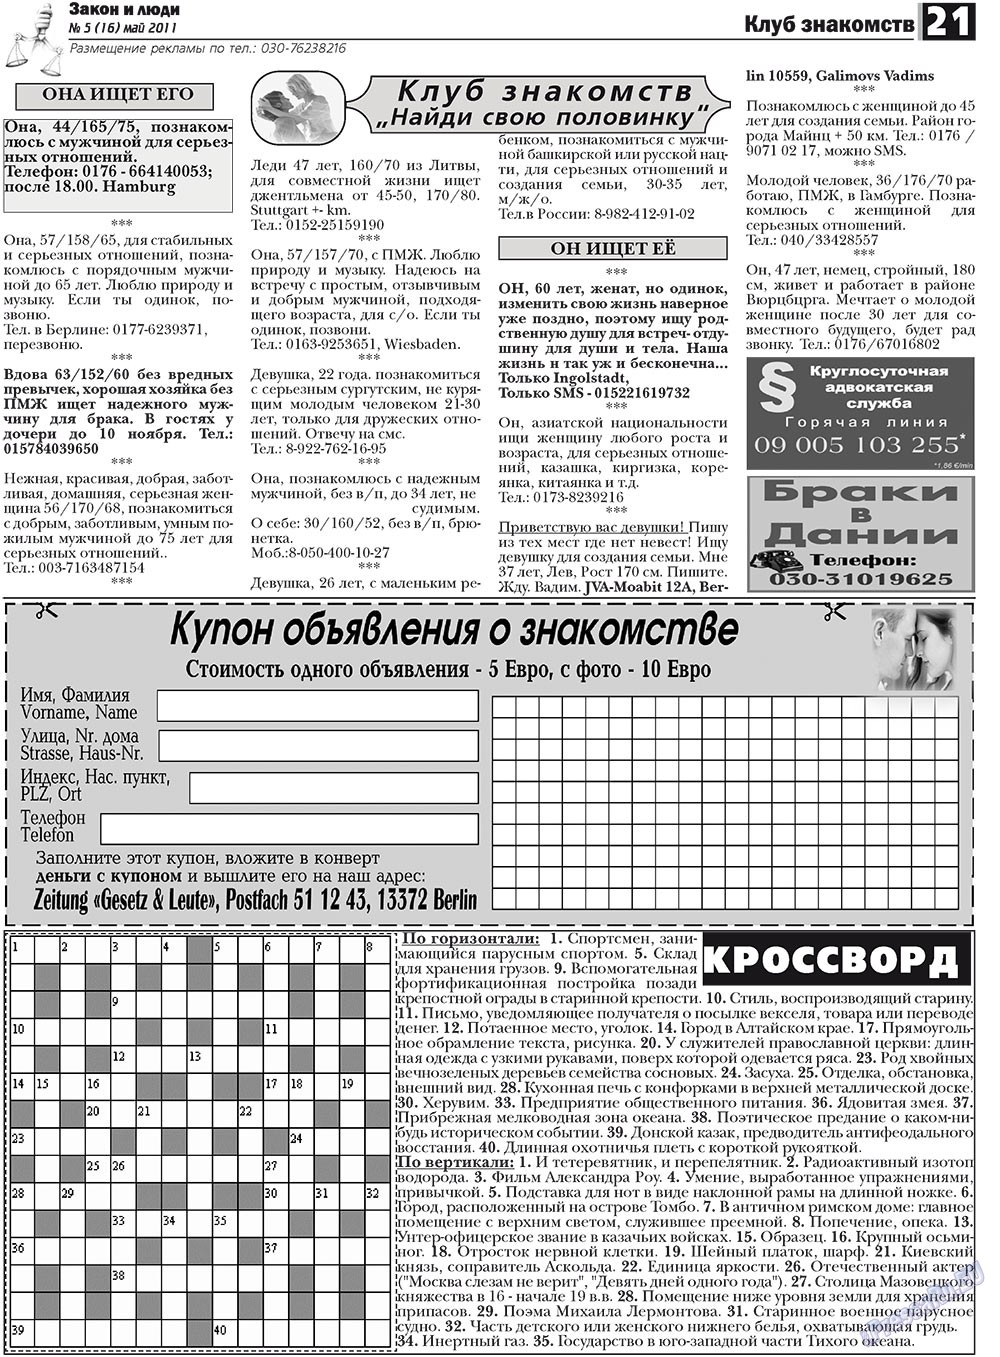 Закон и люди, газета. 2011 №5 стр.21